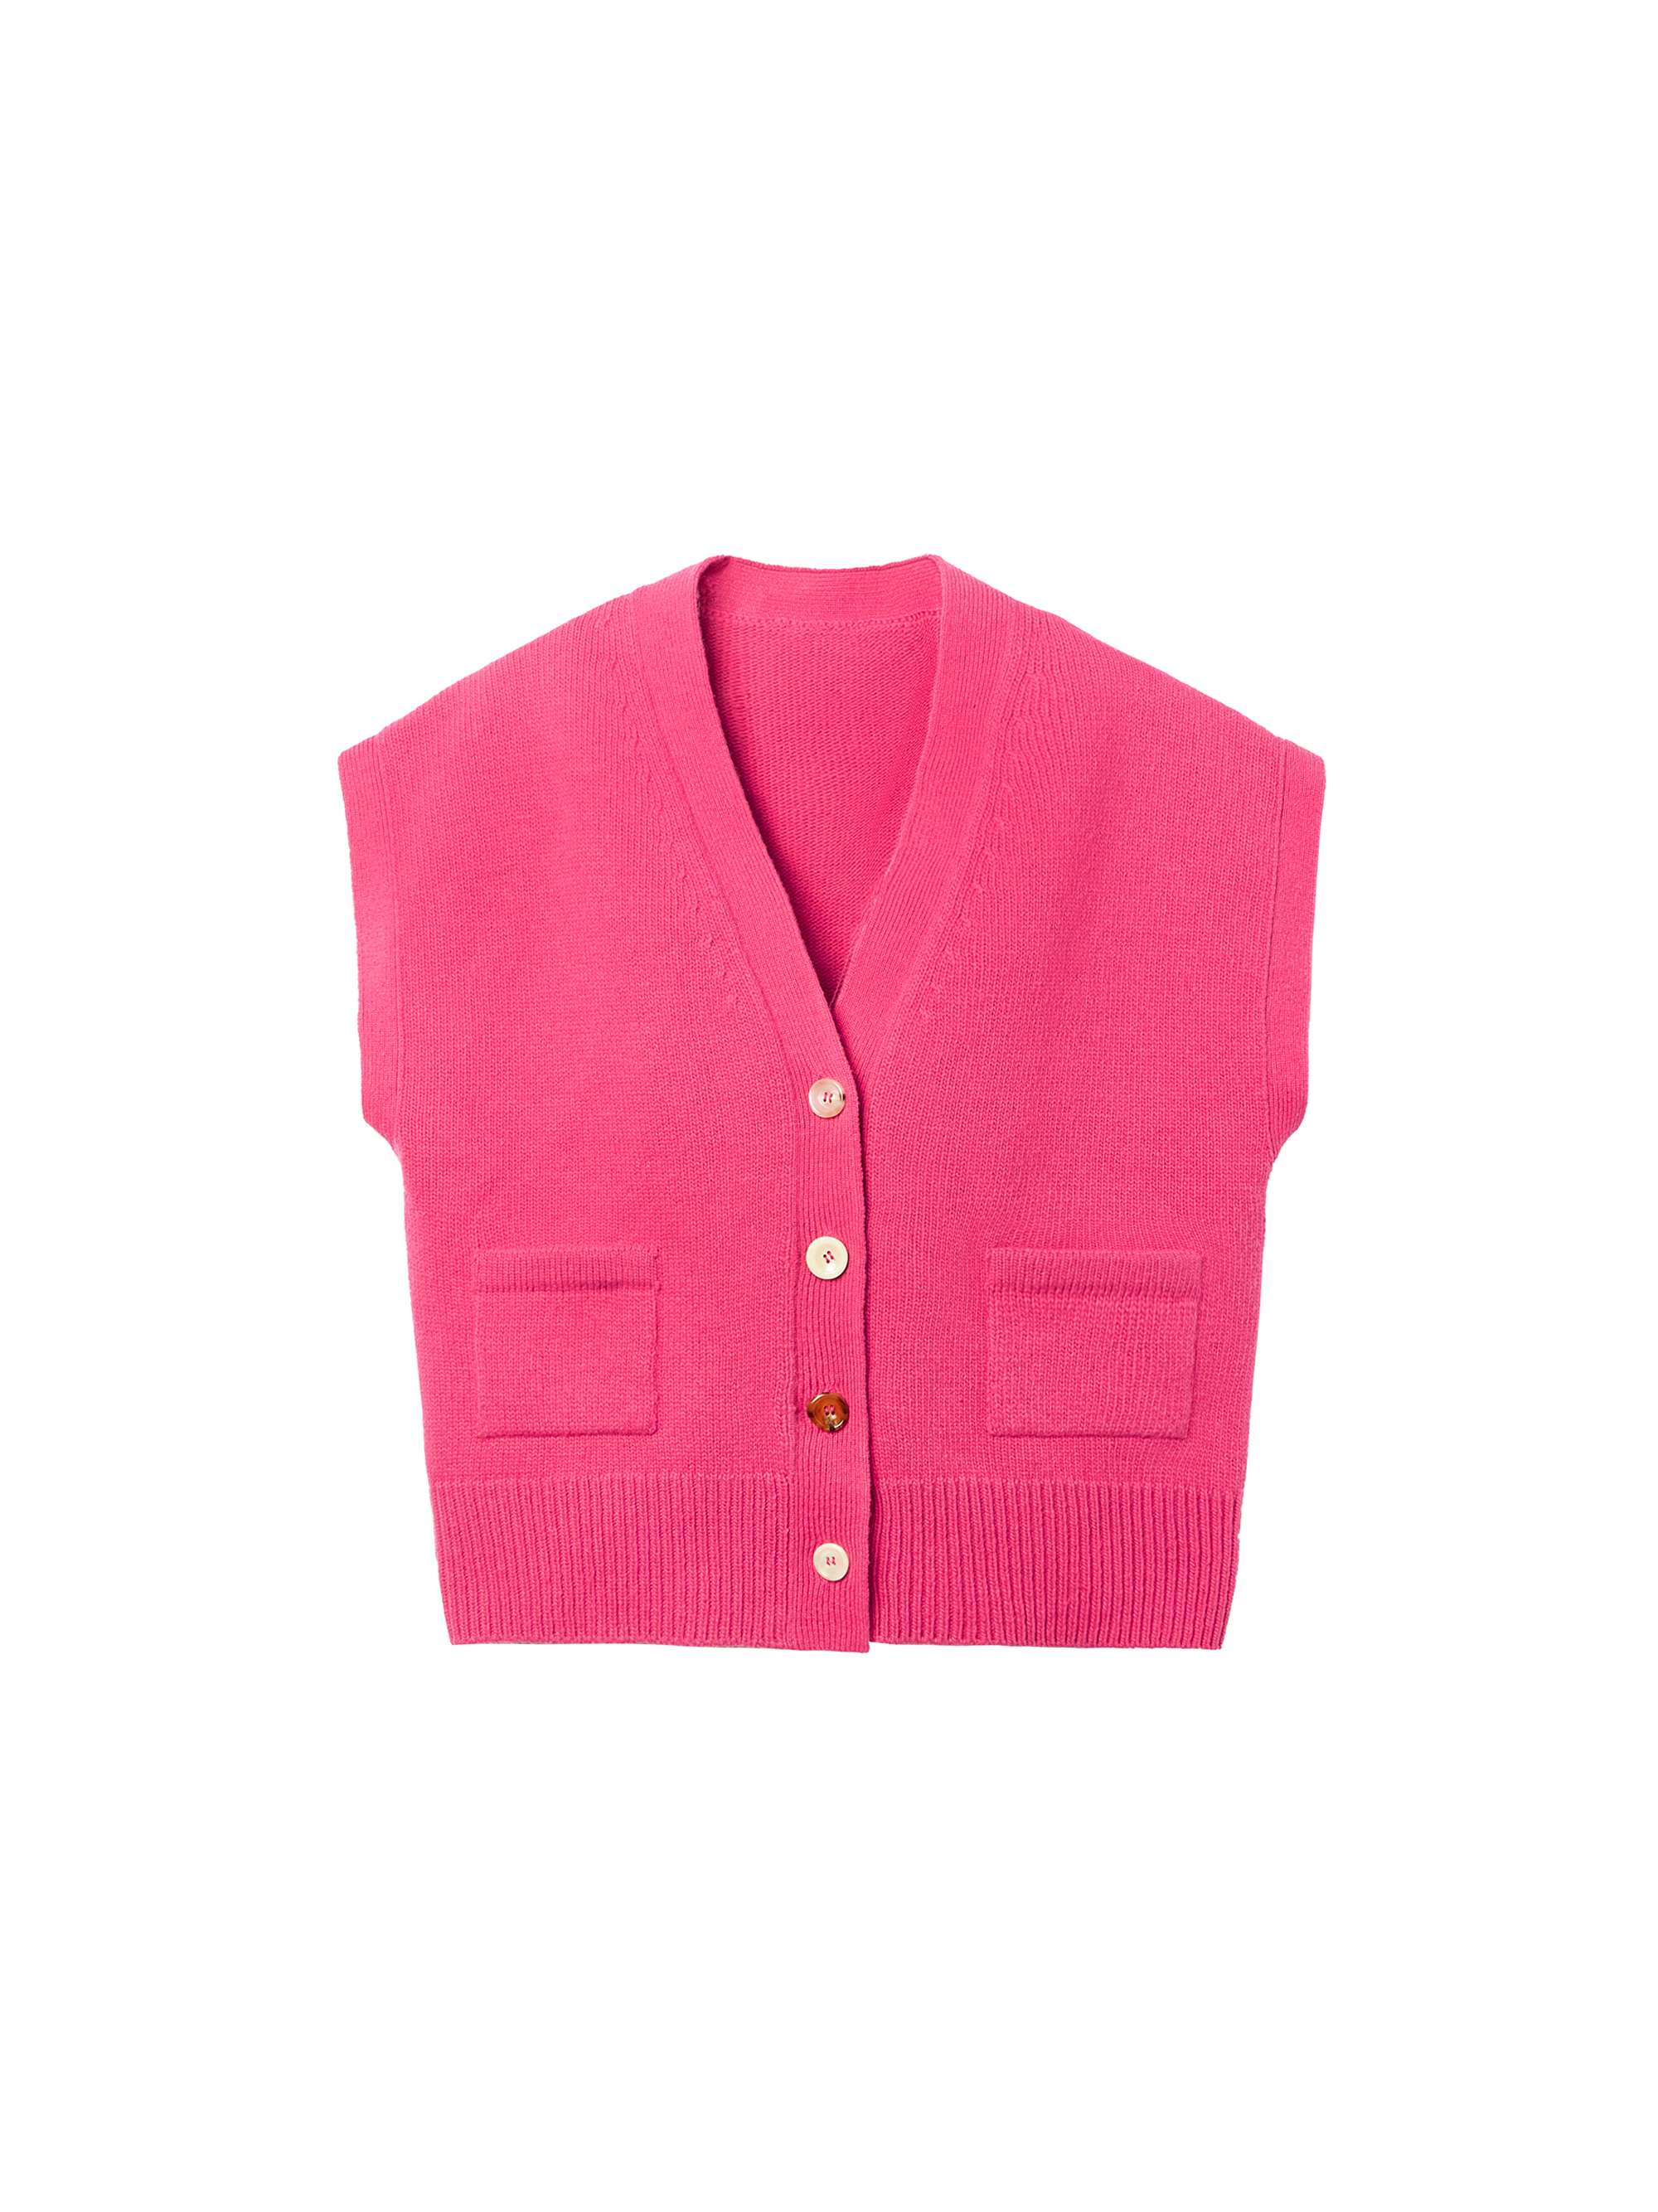 Wool Cashmere Button-Down Knit Vest / 울 캐시미어 버튼-다운 니트 베스트